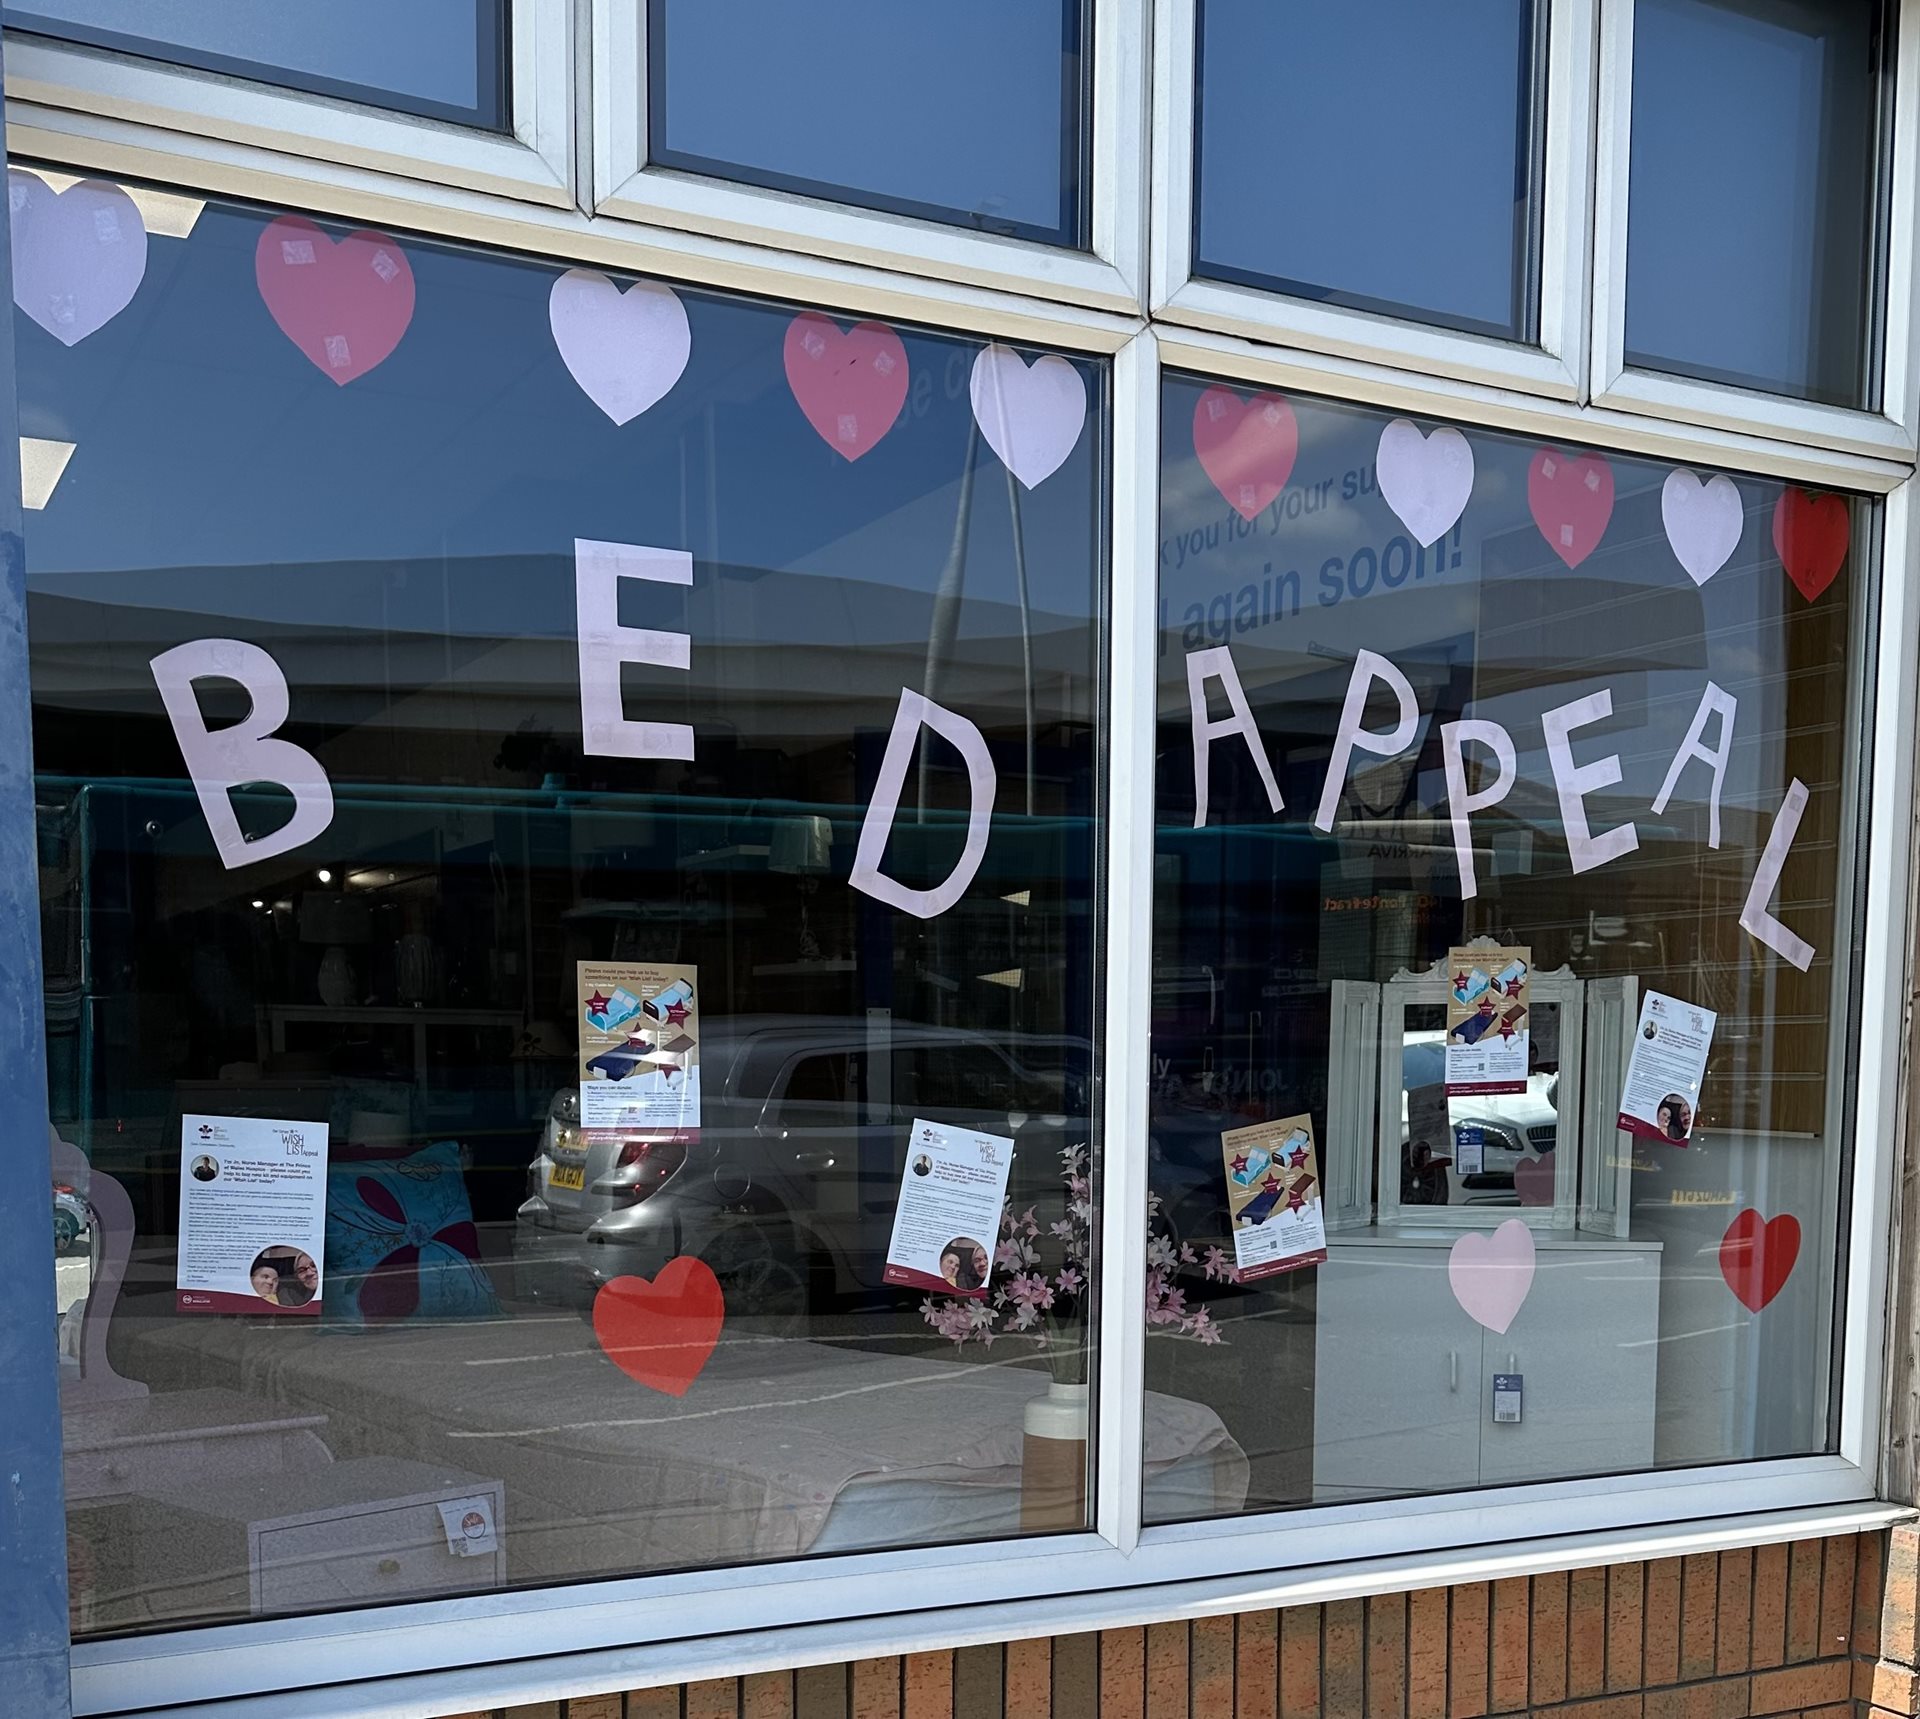 Nurses Wish List appeal shop window